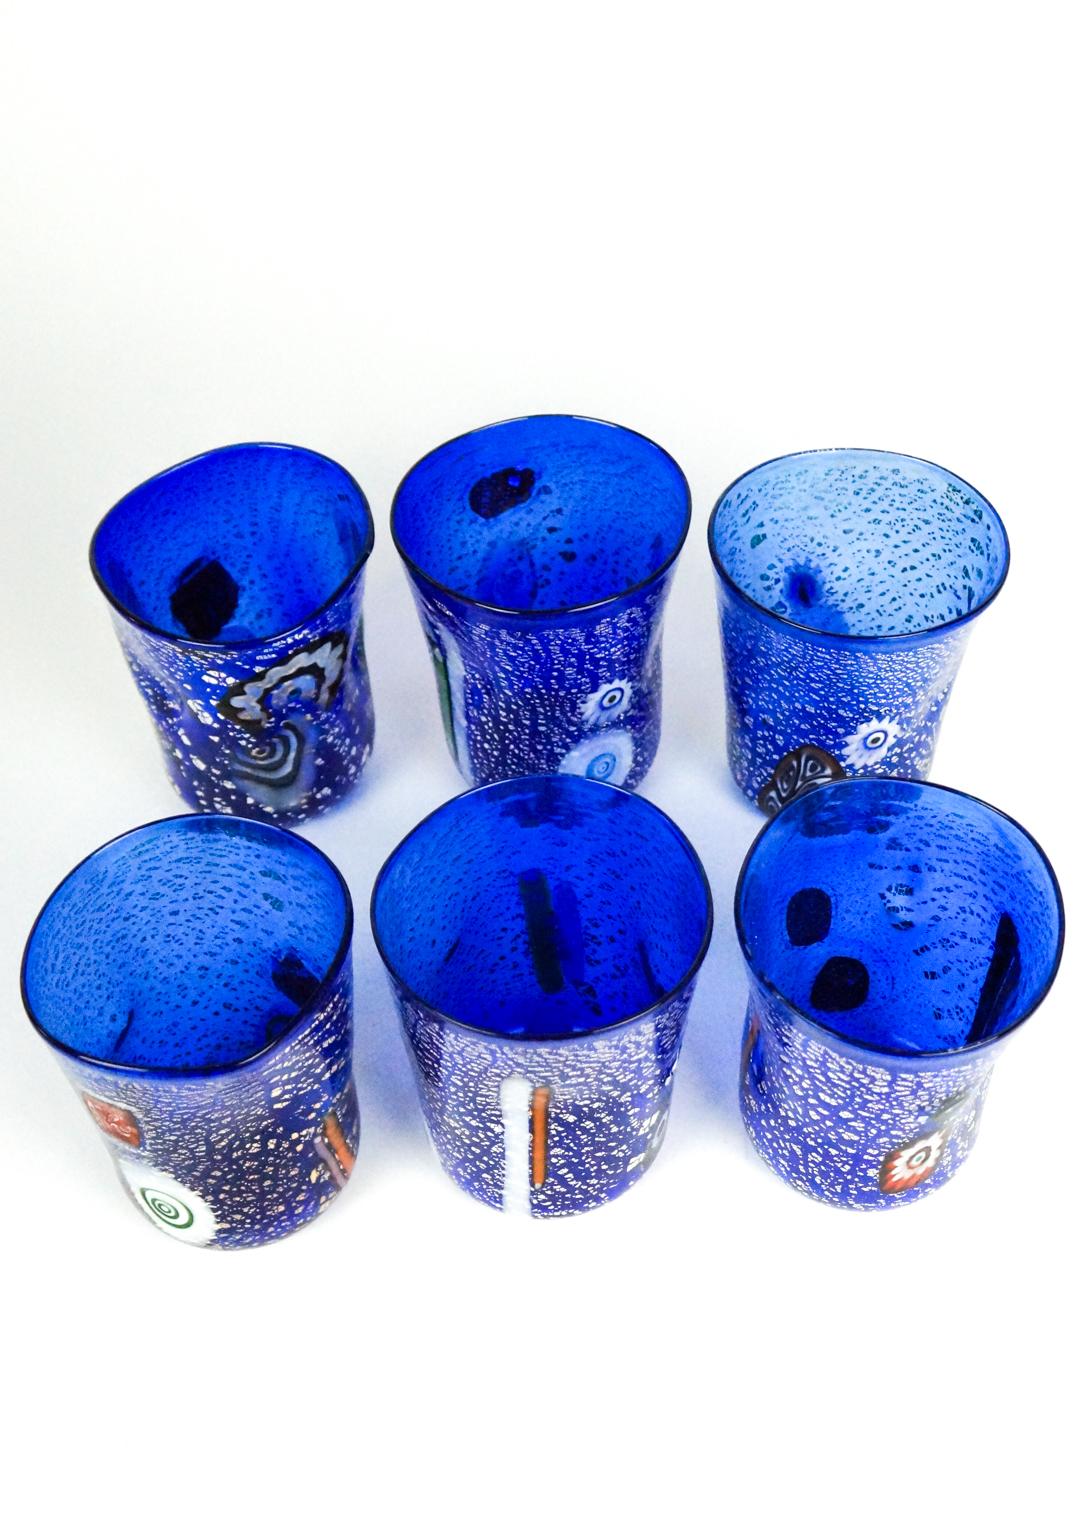 Magnifique série de 6 verres à boire de Murano.
Cet ensemble s'appelle 